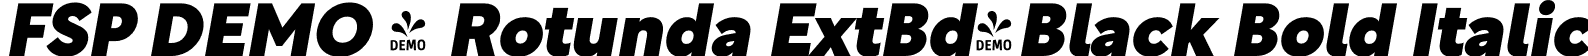 FSP DEMO - Rotunda ExtBd-Black Bold Italic font - Fontspring-DEMO-8b-rotunda-black-italic.otf